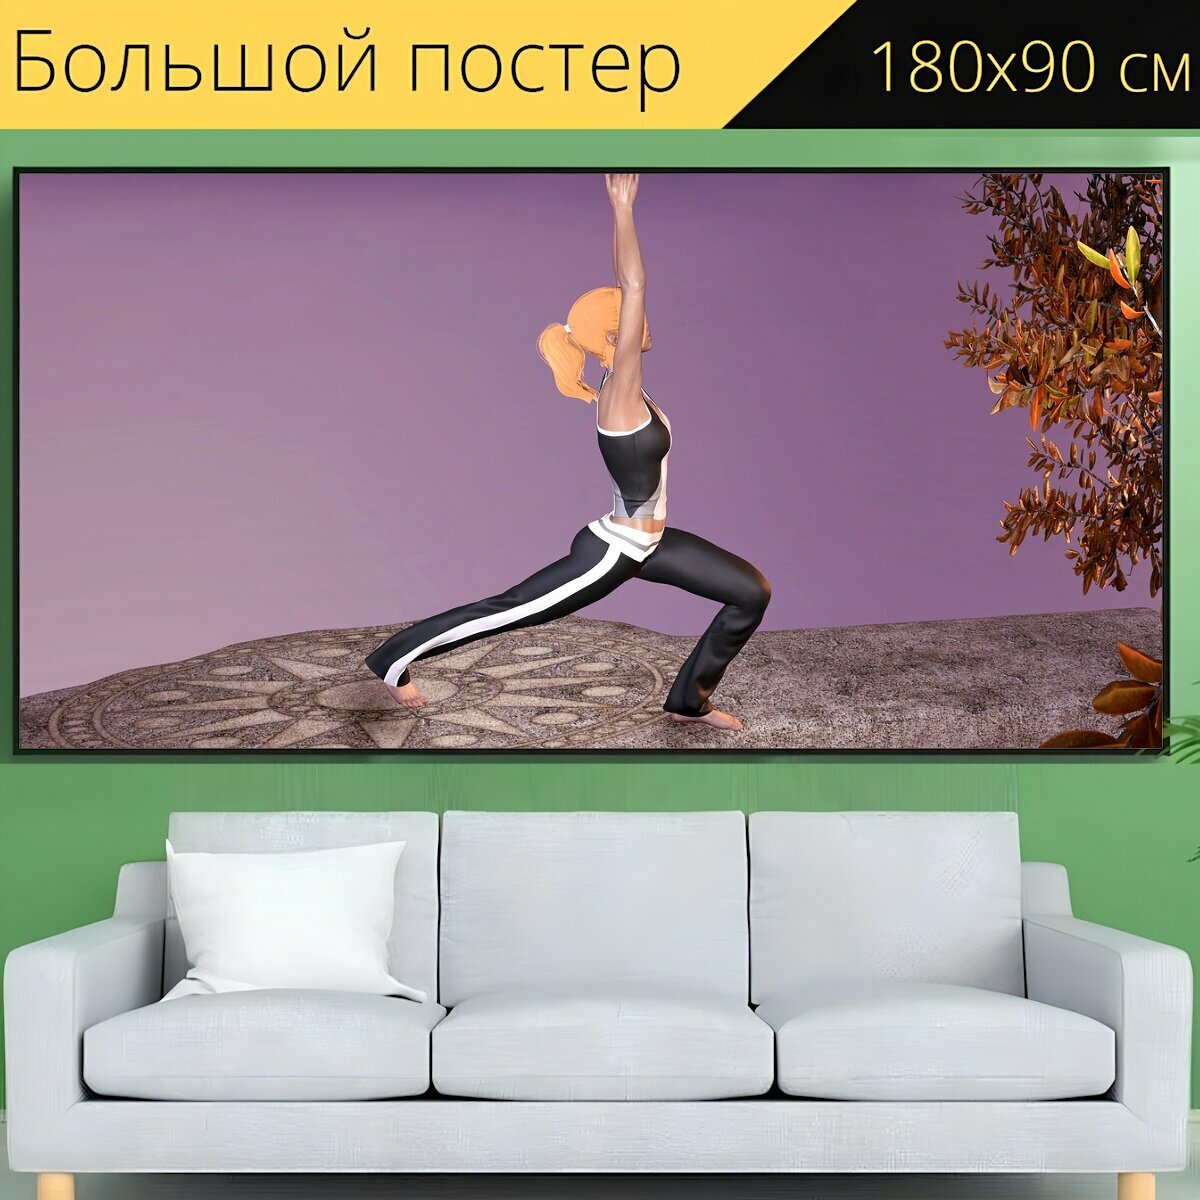 Большой постер "Йога, упражнение, женщина" 180 x 90 см. для интерьера